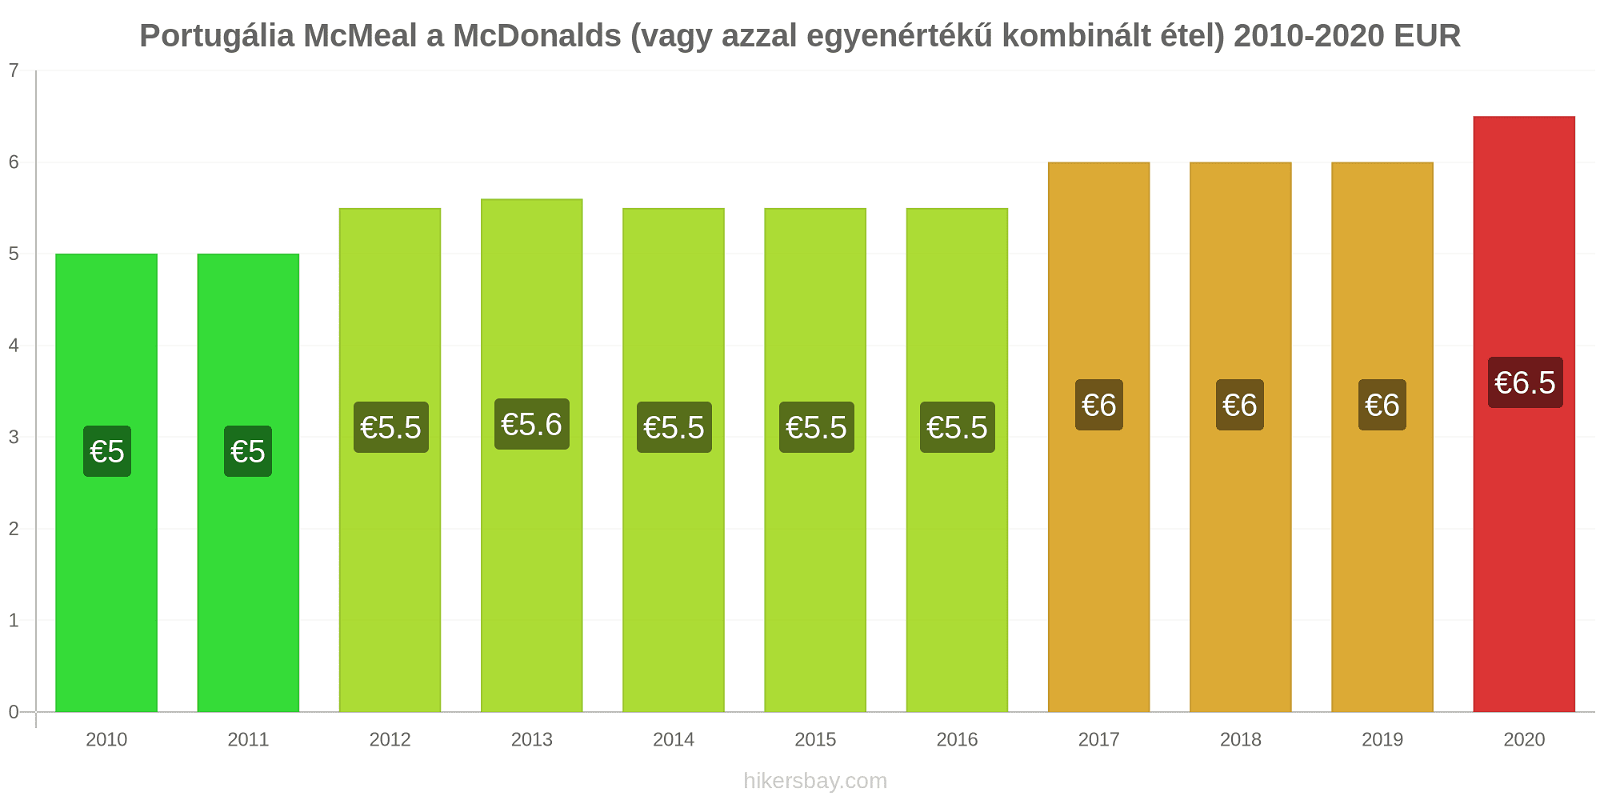 Portugália árváltozások McMeal a McDonalds (vagy azzal egyenértékű kombinált étel) hikersbay.com